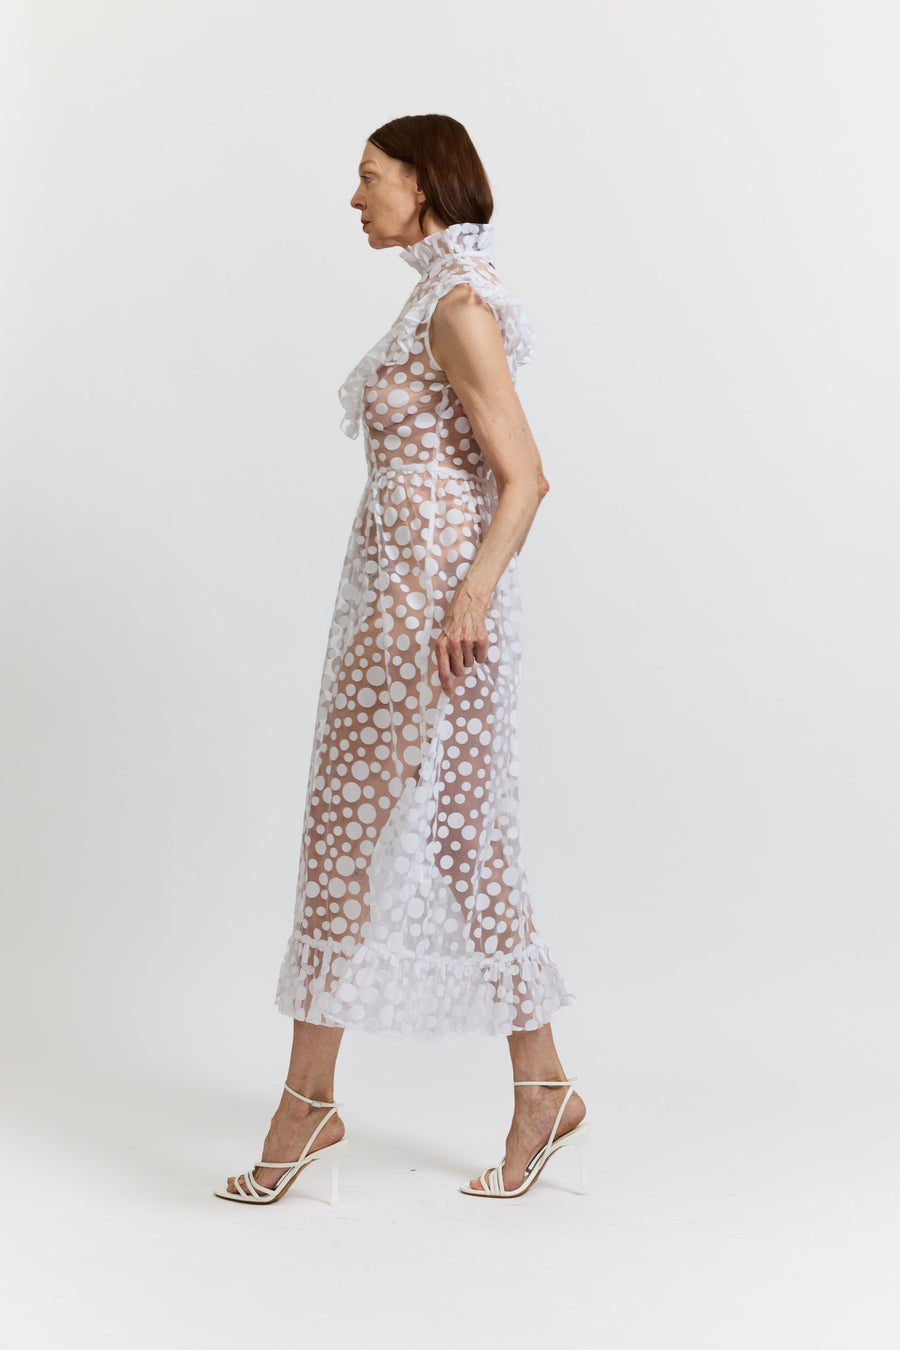 BATSHEVA - Caroline Dress in White Polka Dot Flocked Tulle